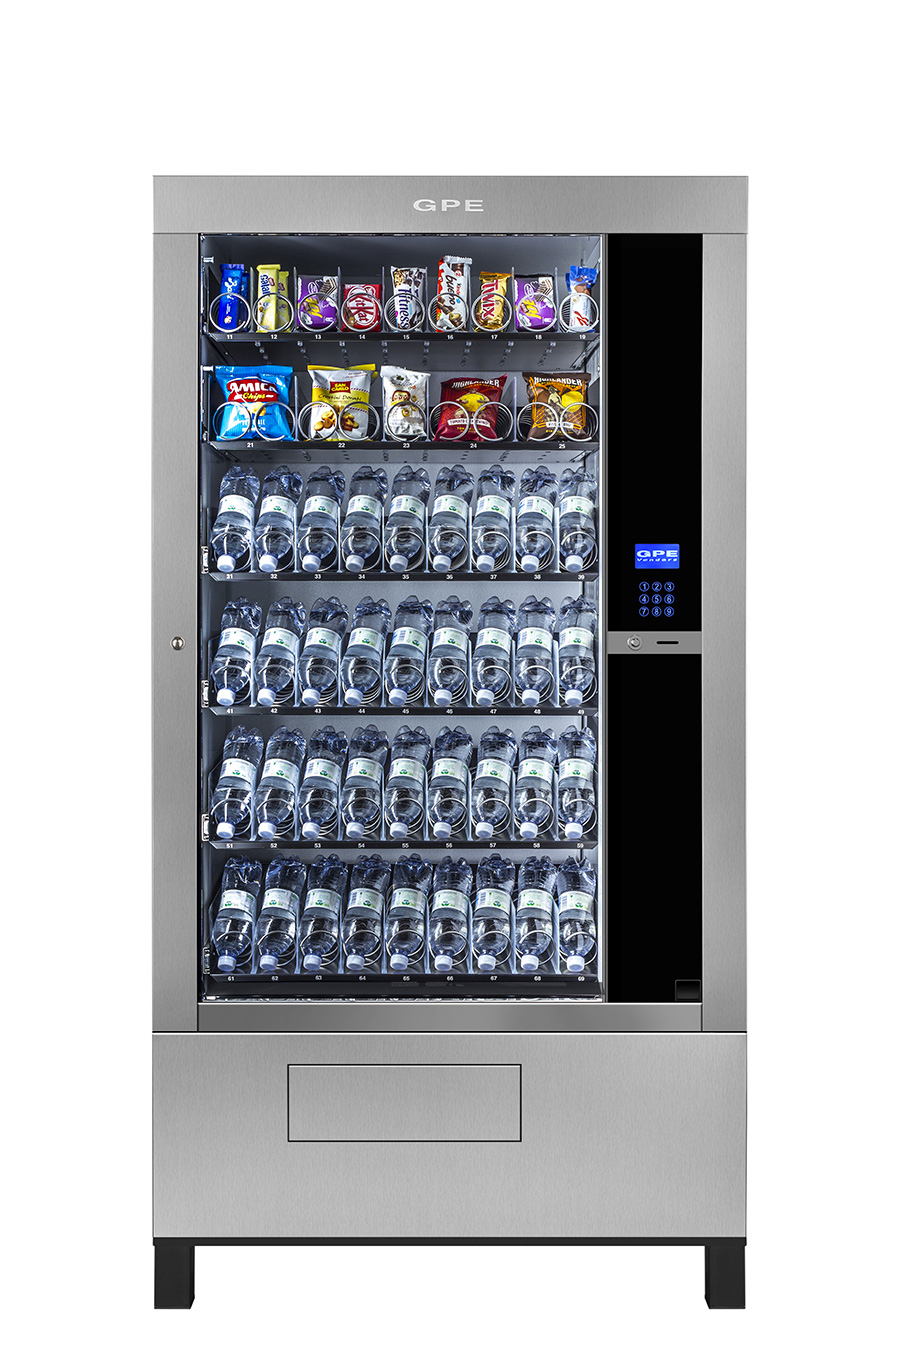 Gpe 50 il più grande della gamma refrigeratore per vendita di snack bibite versione anche blindato